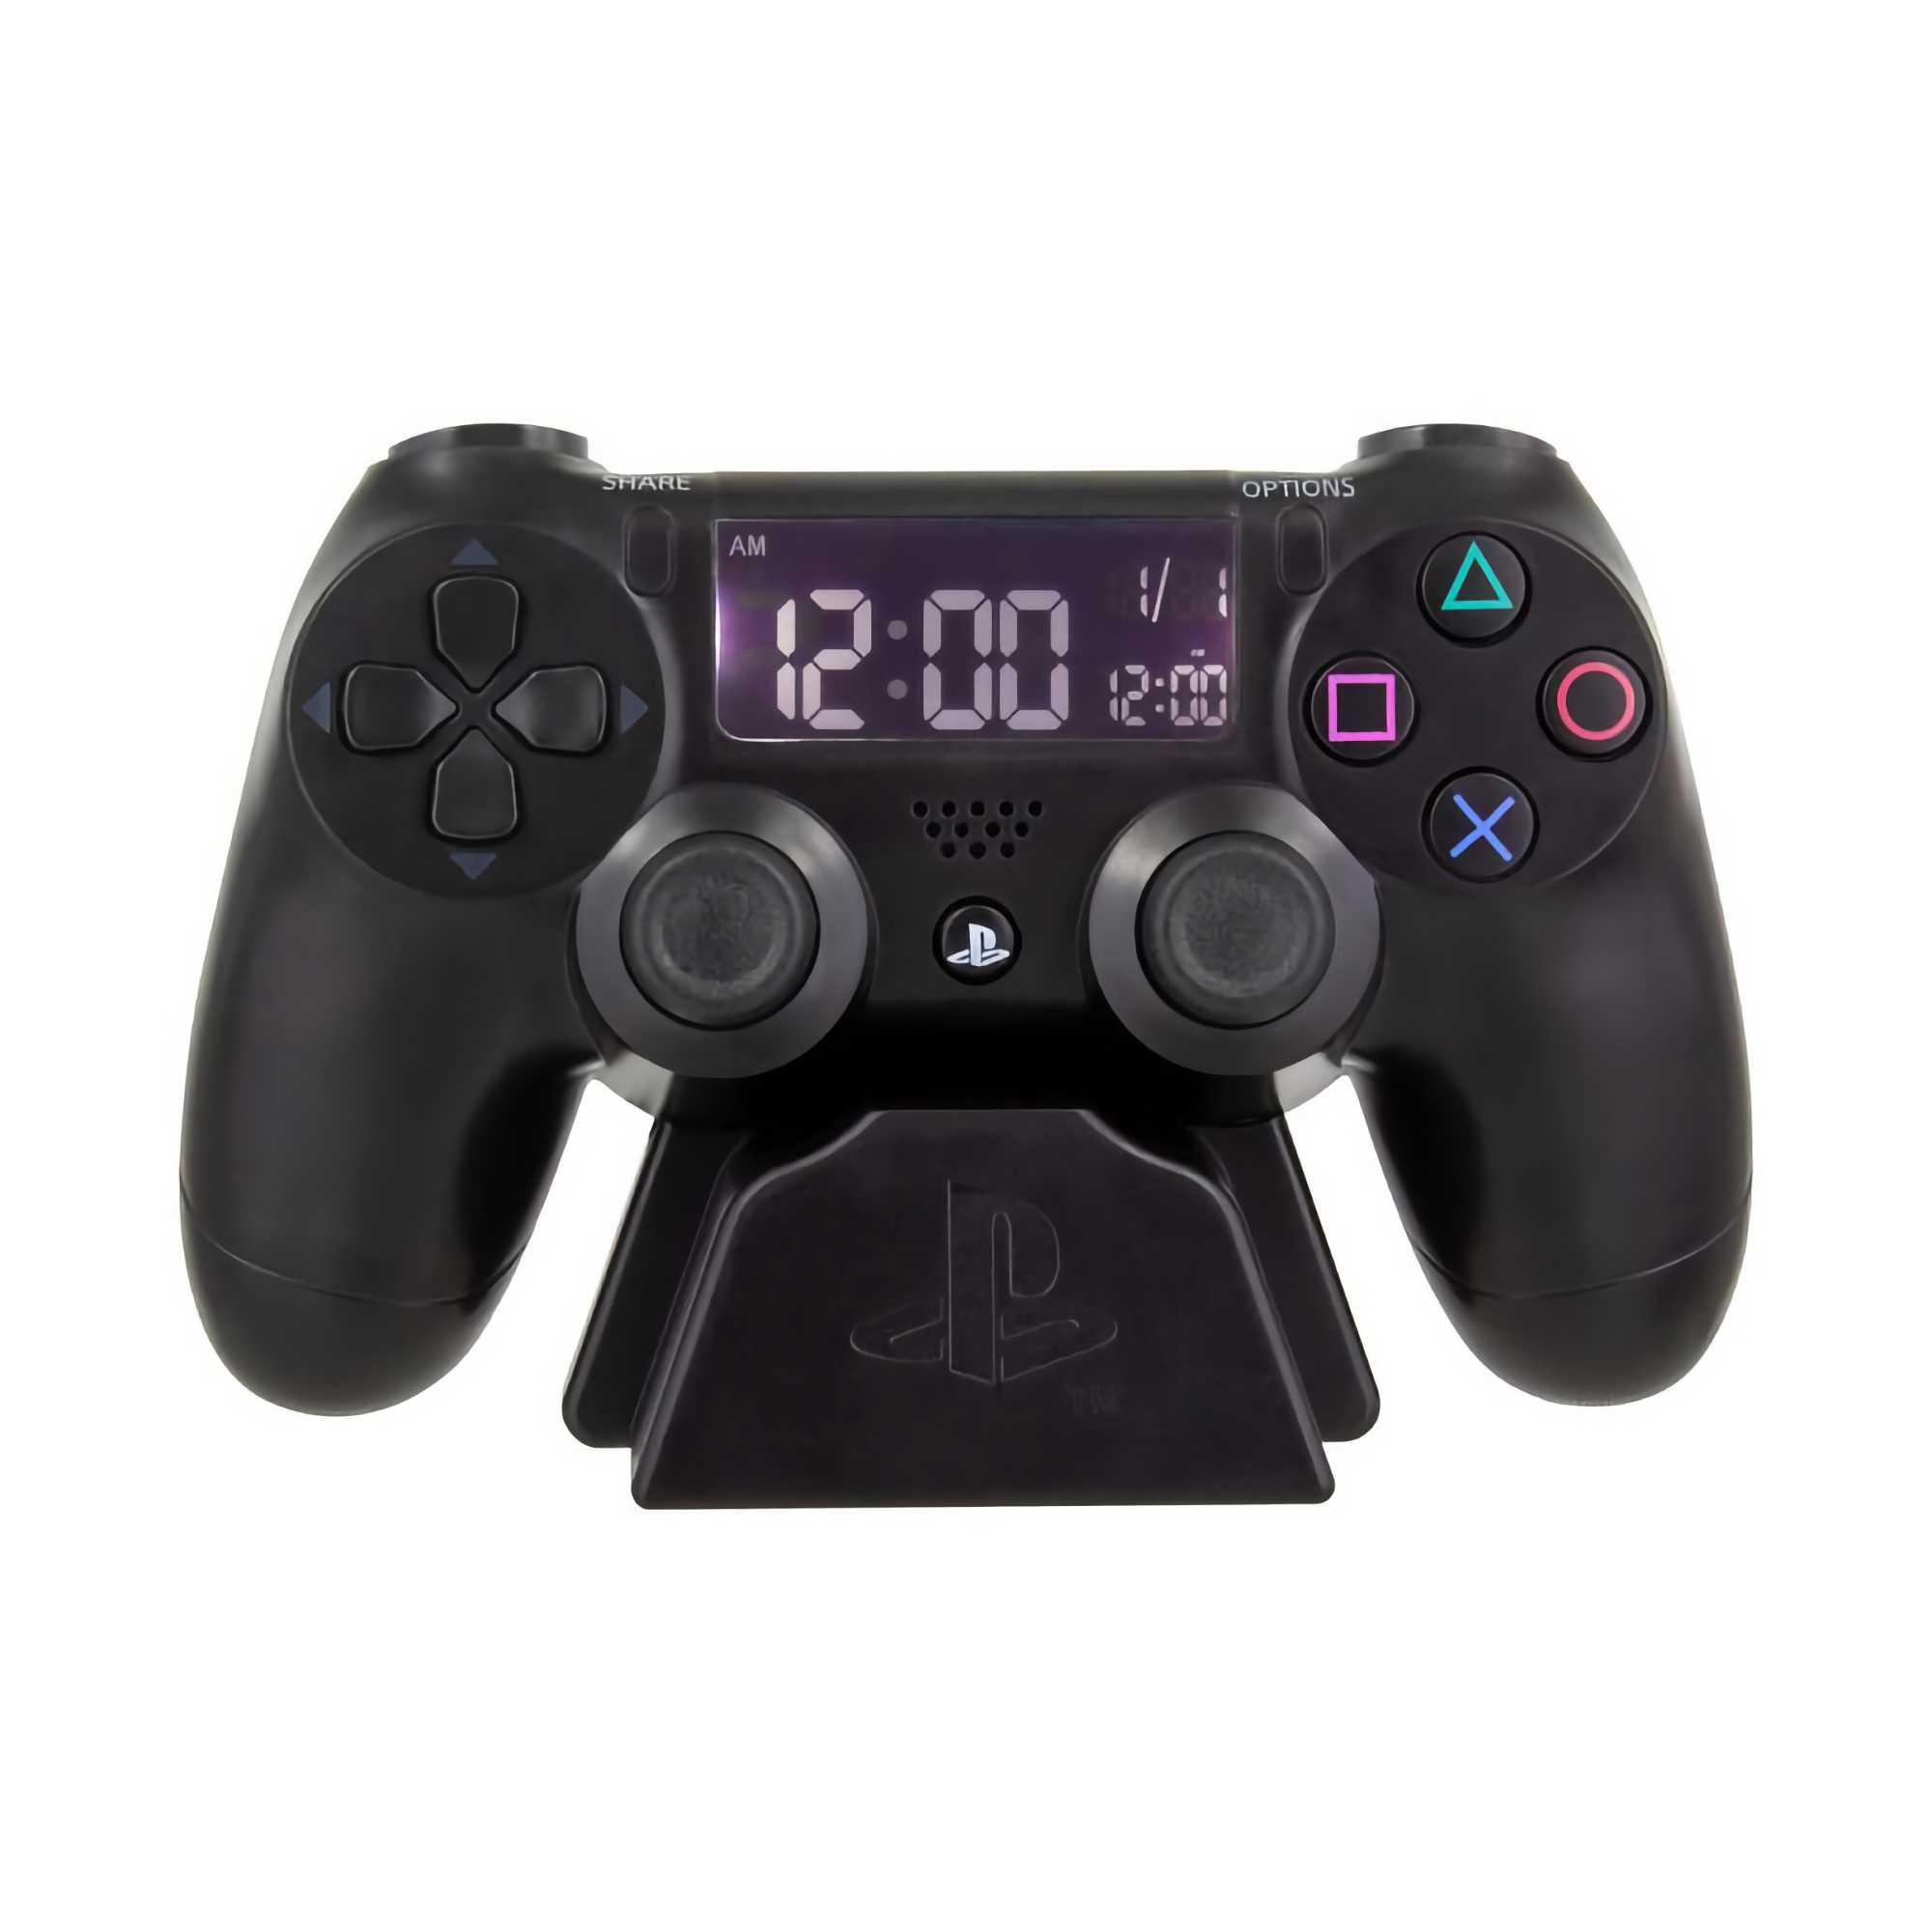 Playstation alarm clock v2, black